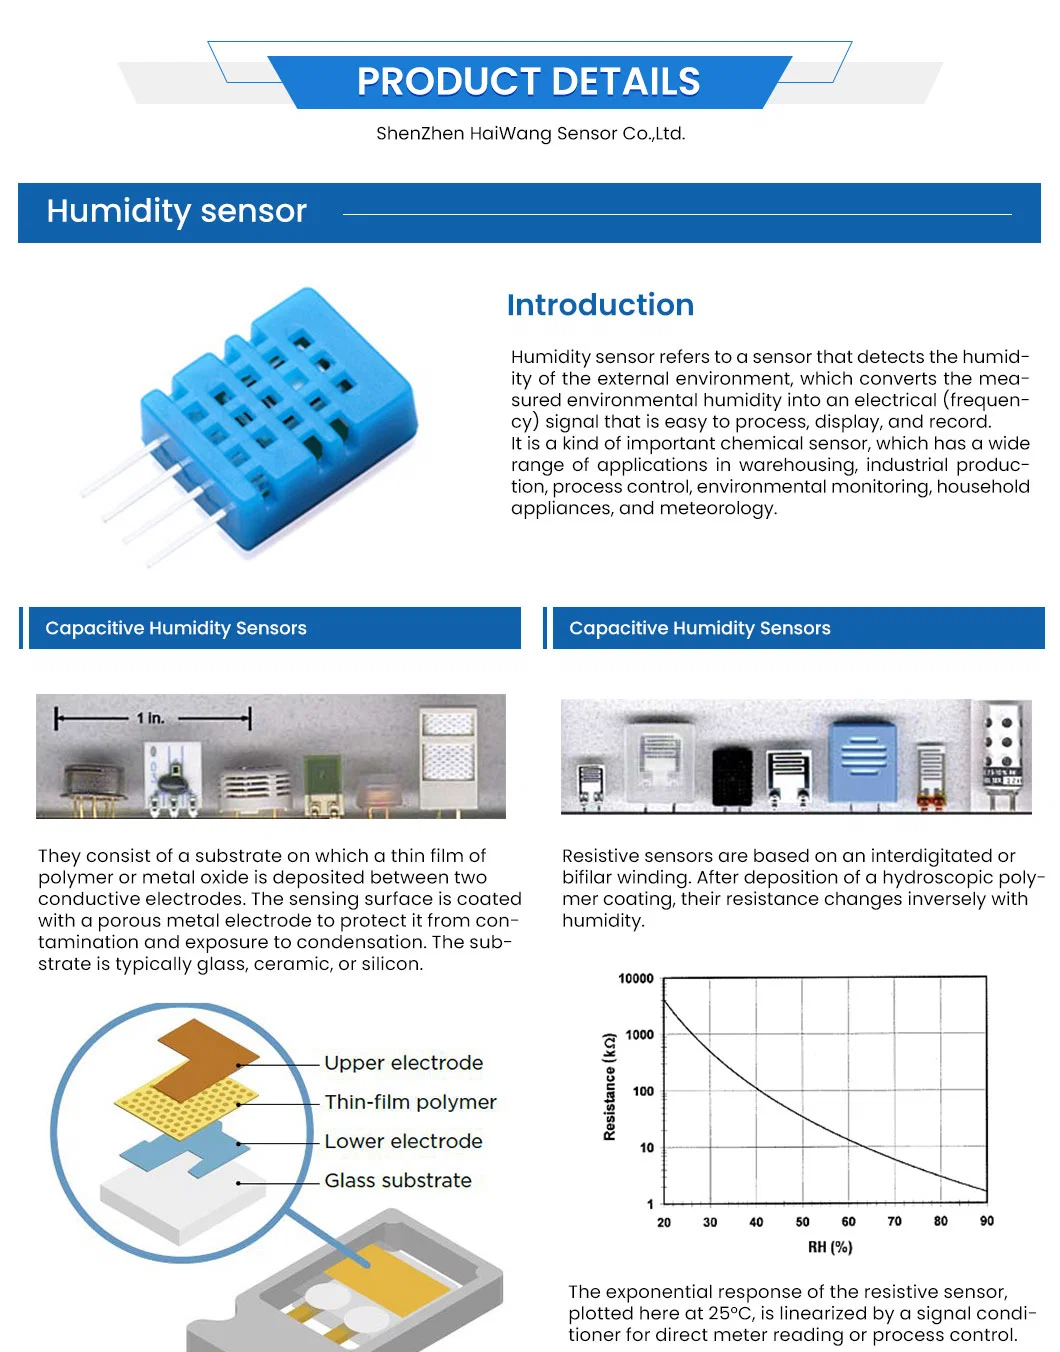 Haiwang Hr002 Temperature Humidity Sensor 24VAC China Hr002 Humidity Sensor Box Manufacturing High-Quality Hr002 Temperatur and Humidity Sensor Outdoor Iot